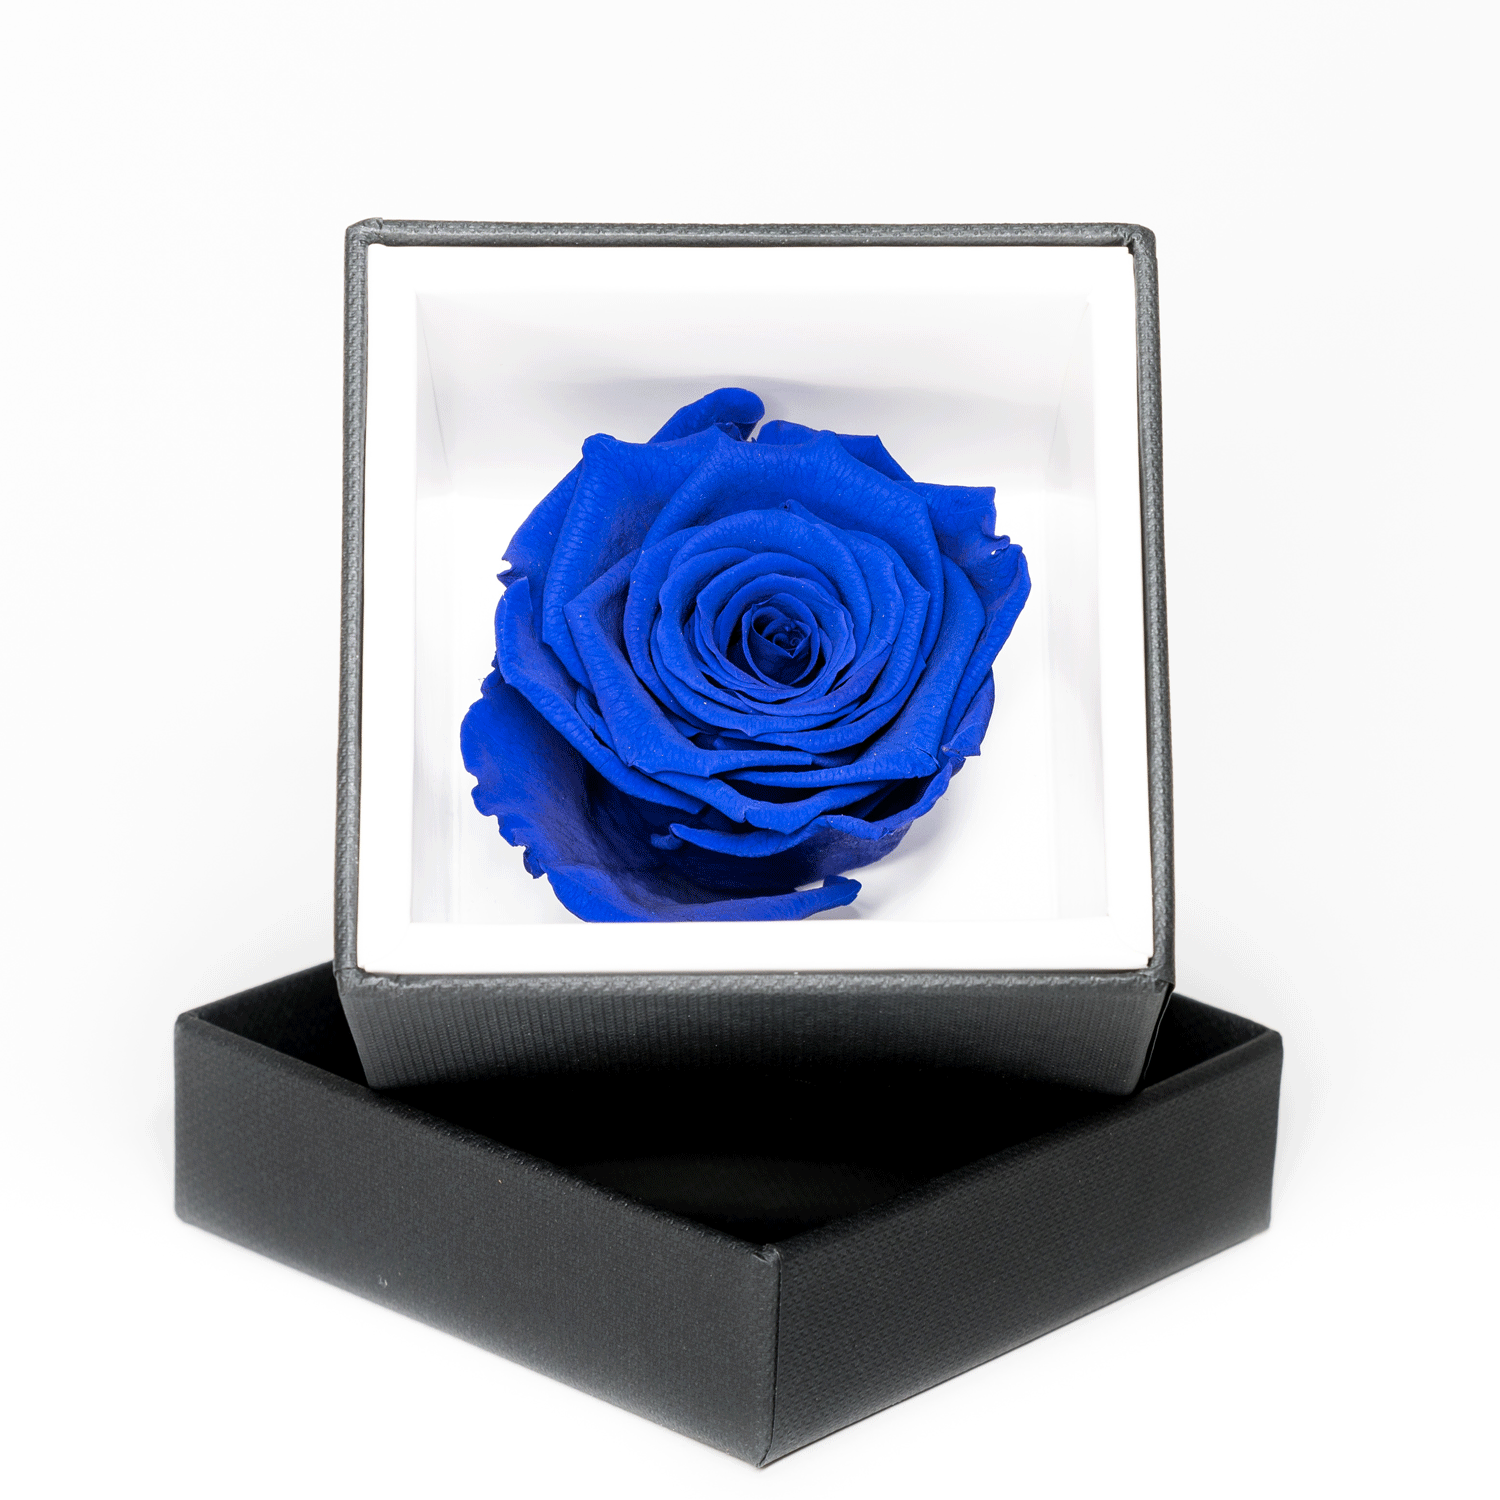 Rosa stabilizzata Blu - Rose in a Box